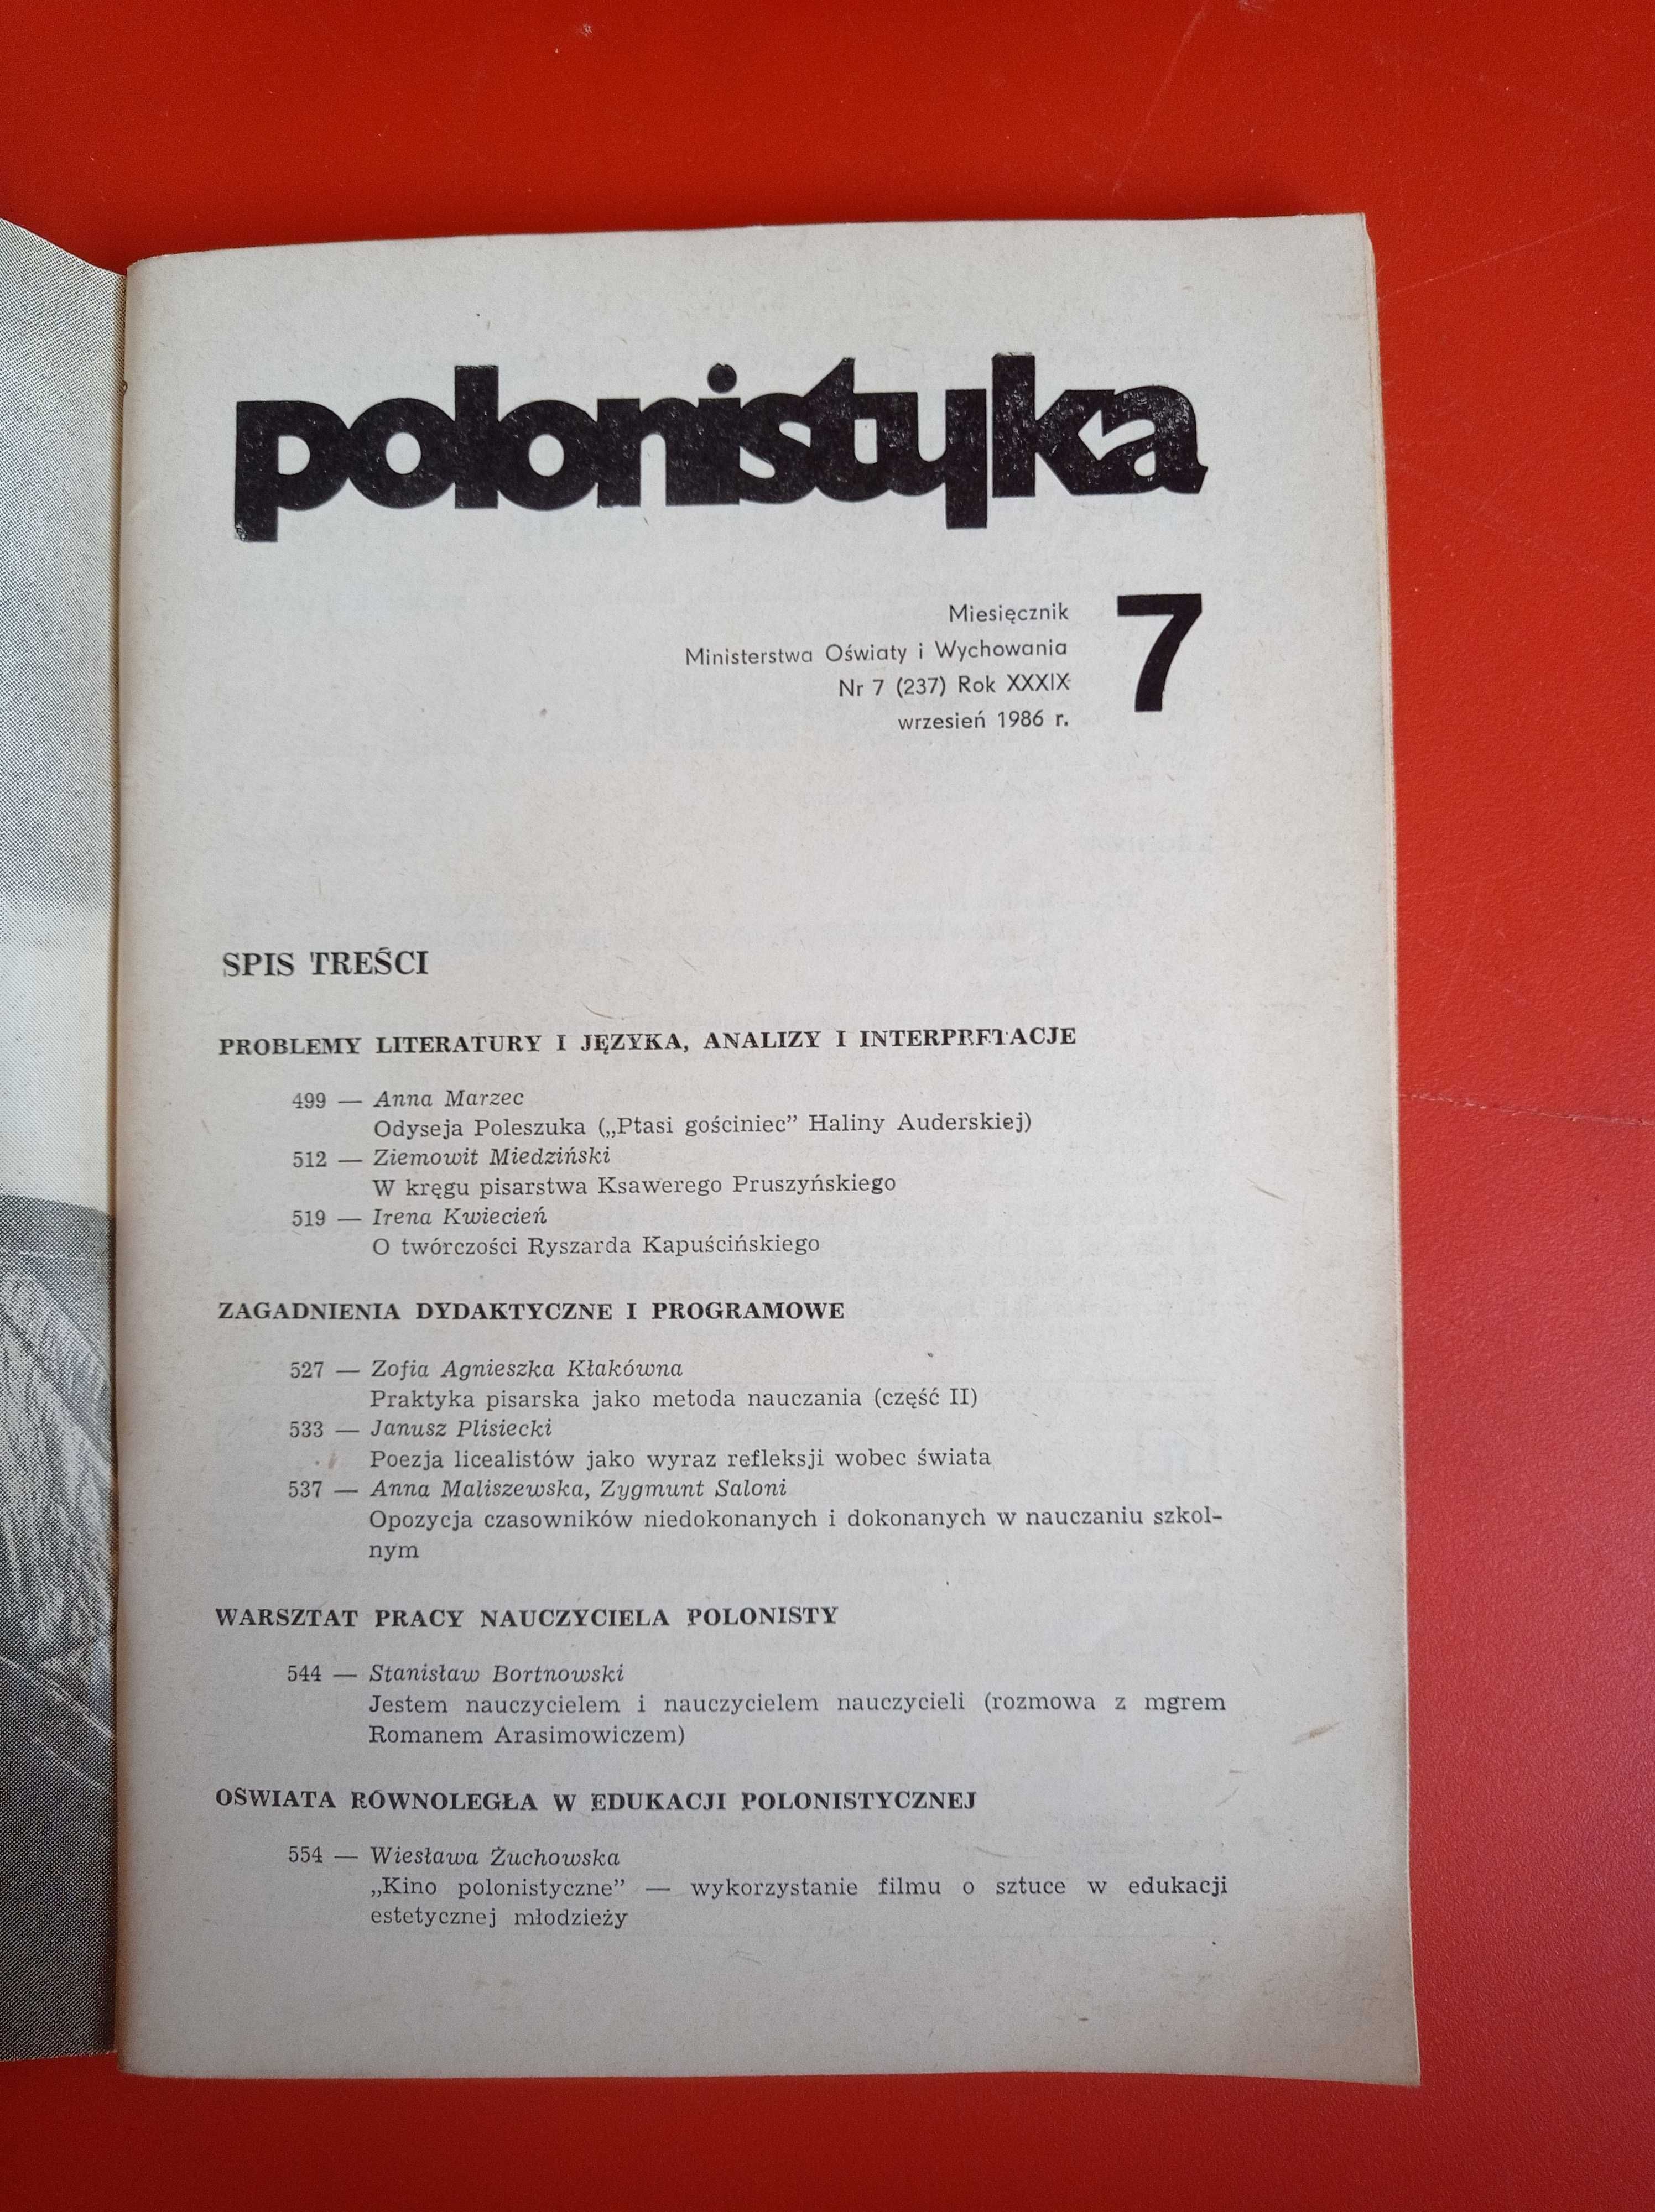 Polonistyka nr 7 (237) wrzesień 1986, WSiP